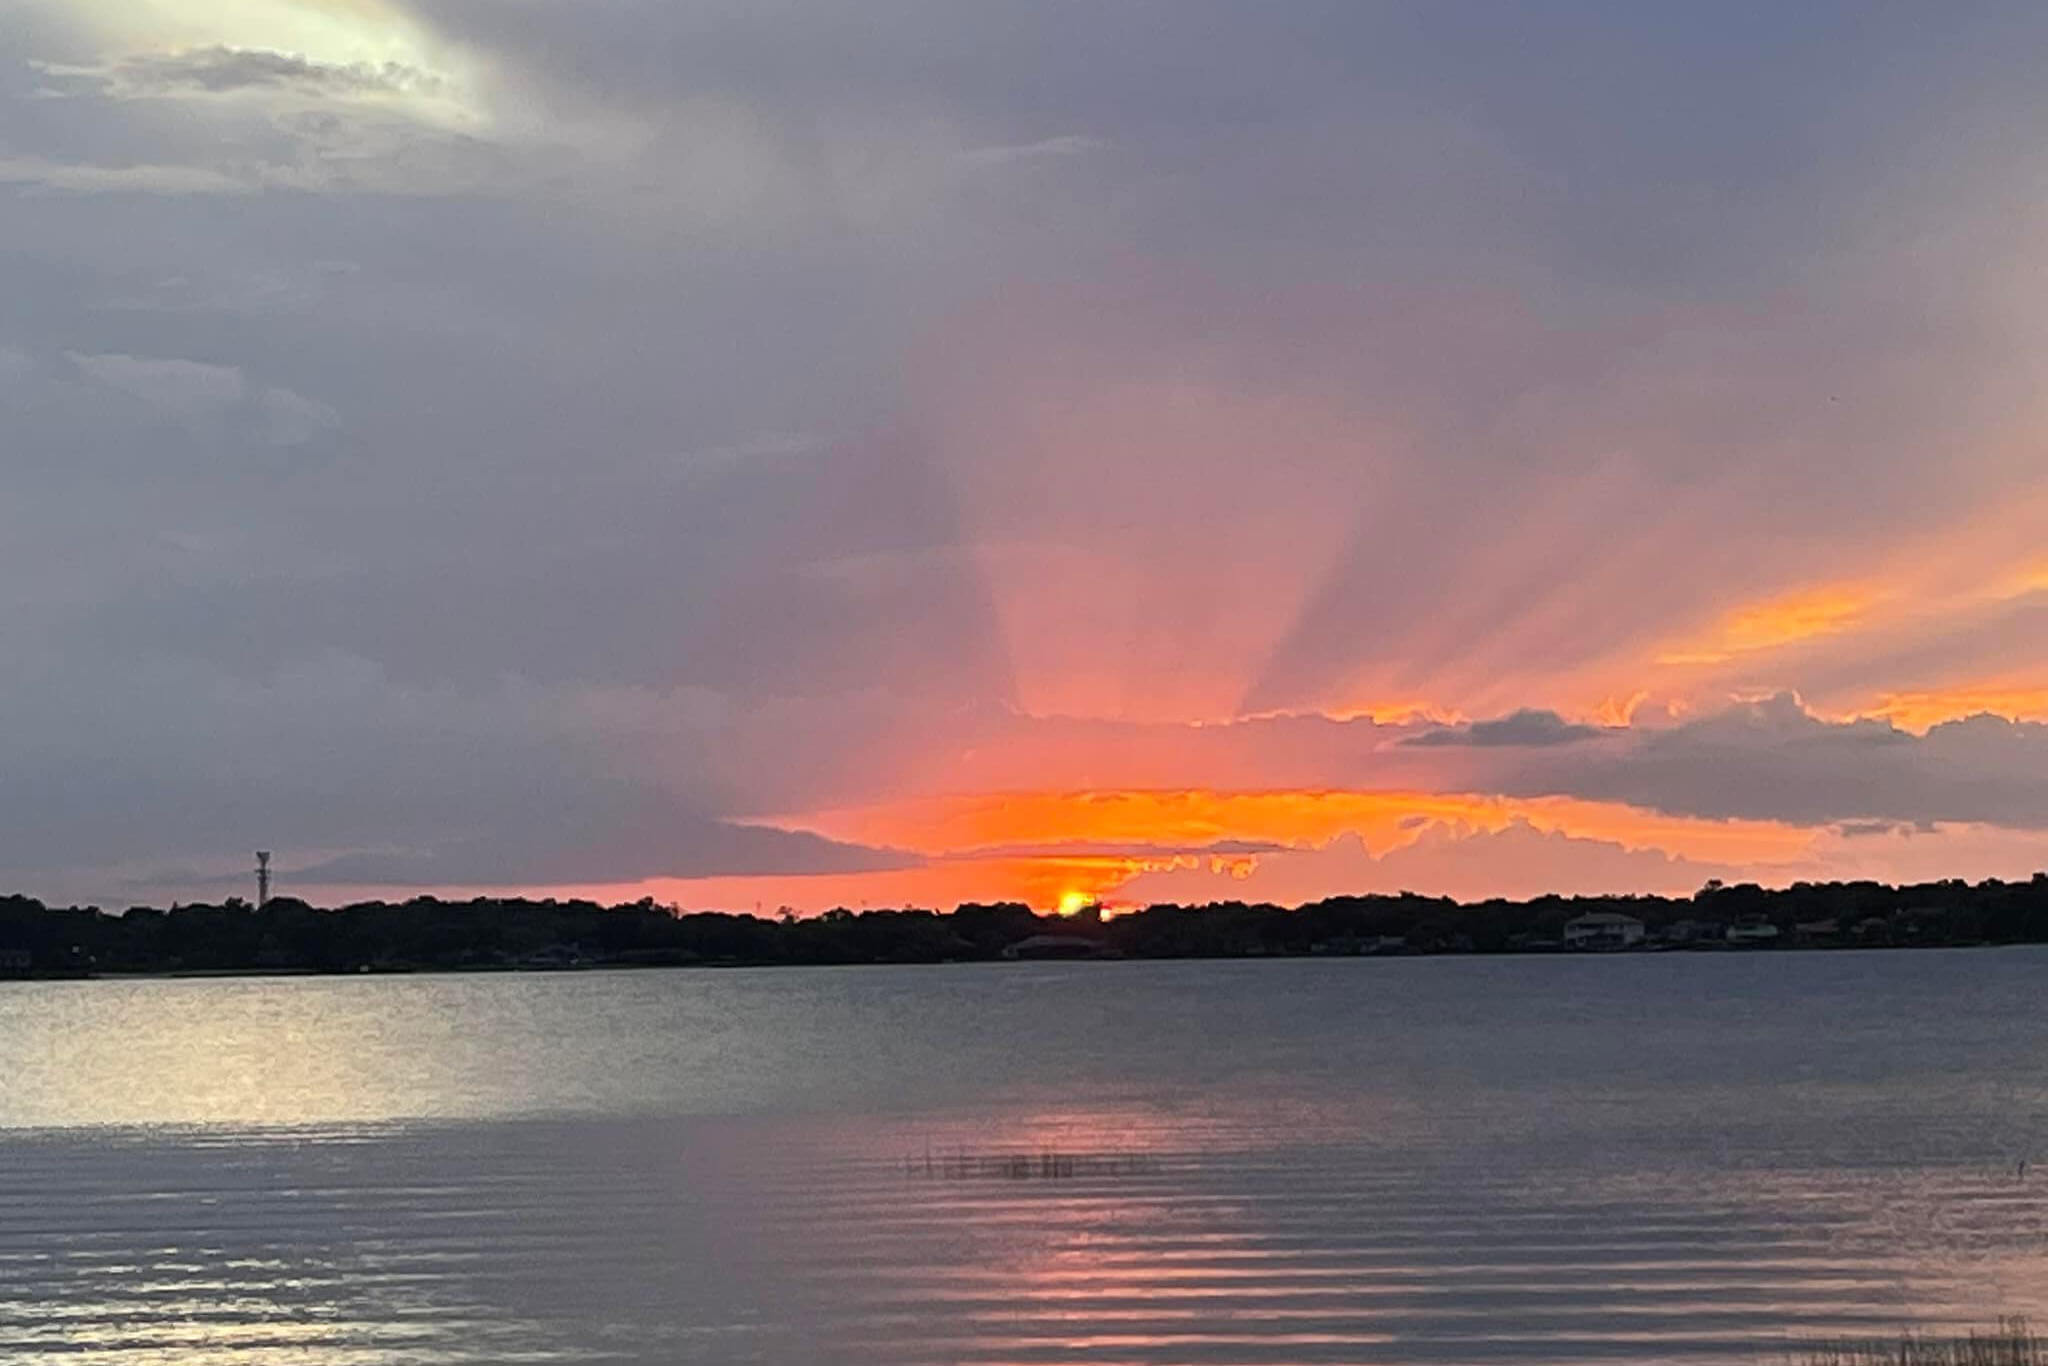 Lake conway at sunset.